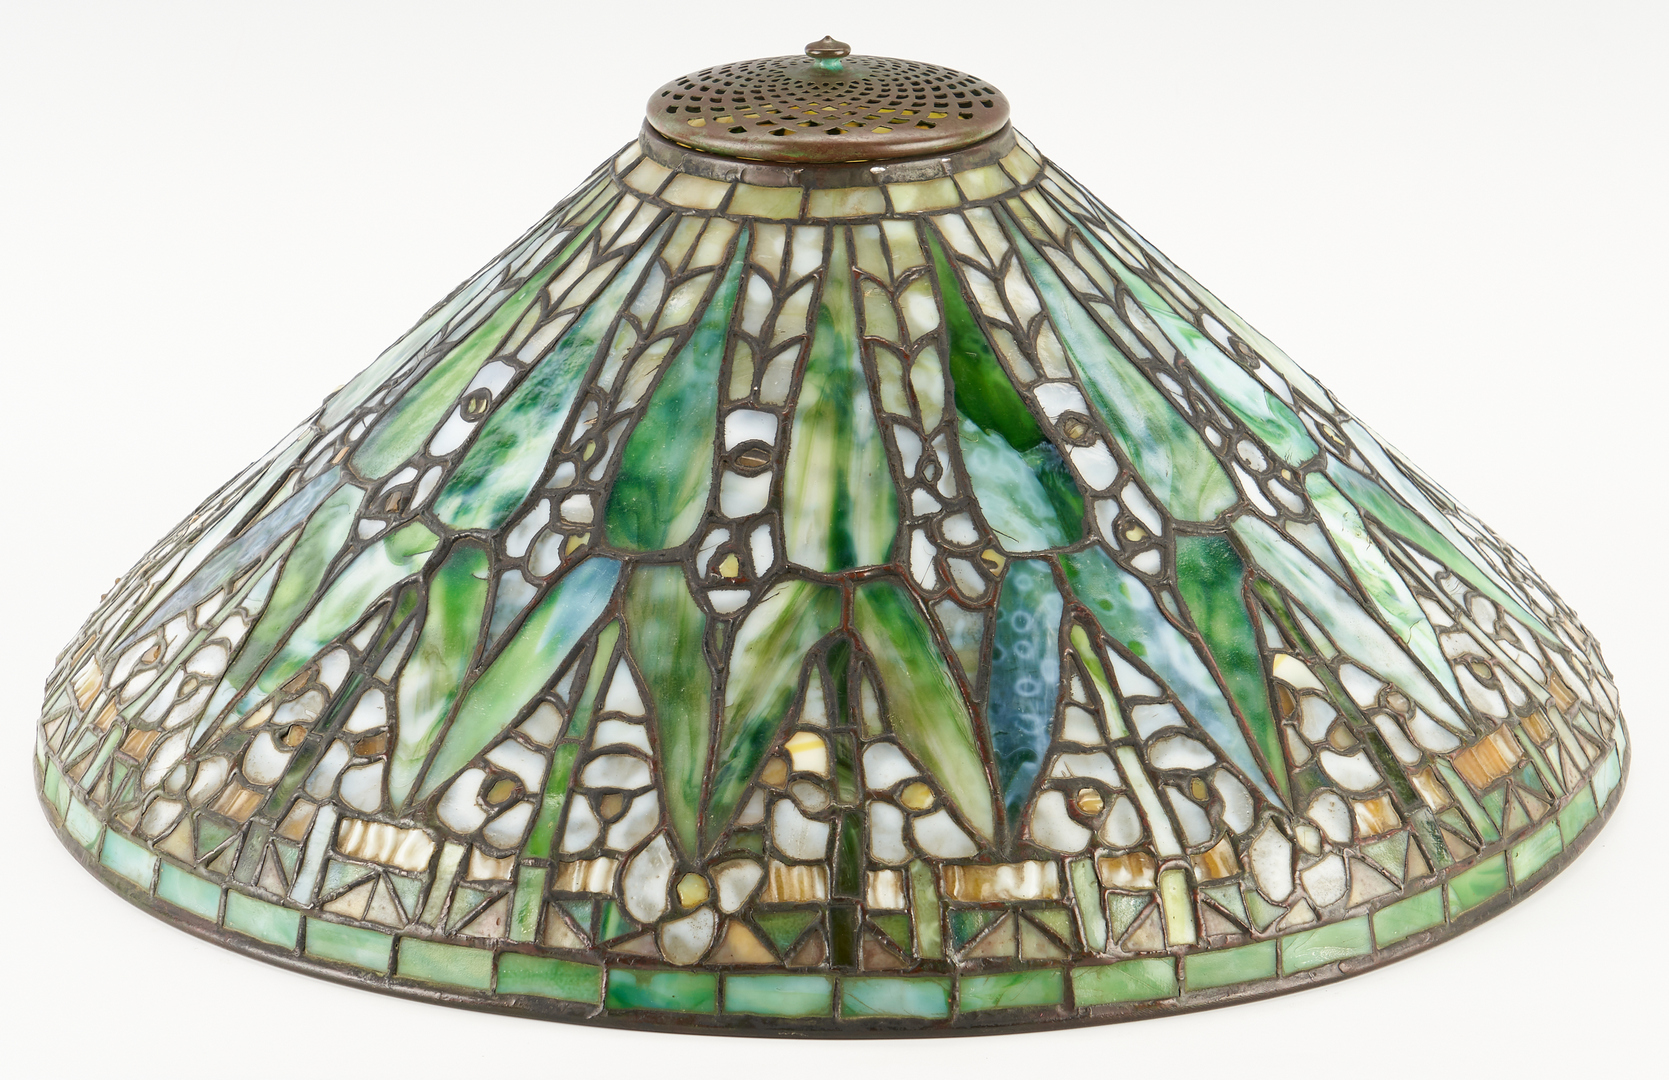 Lot 538: Tiffany Studios Table Lamp, Arrowroot Shade